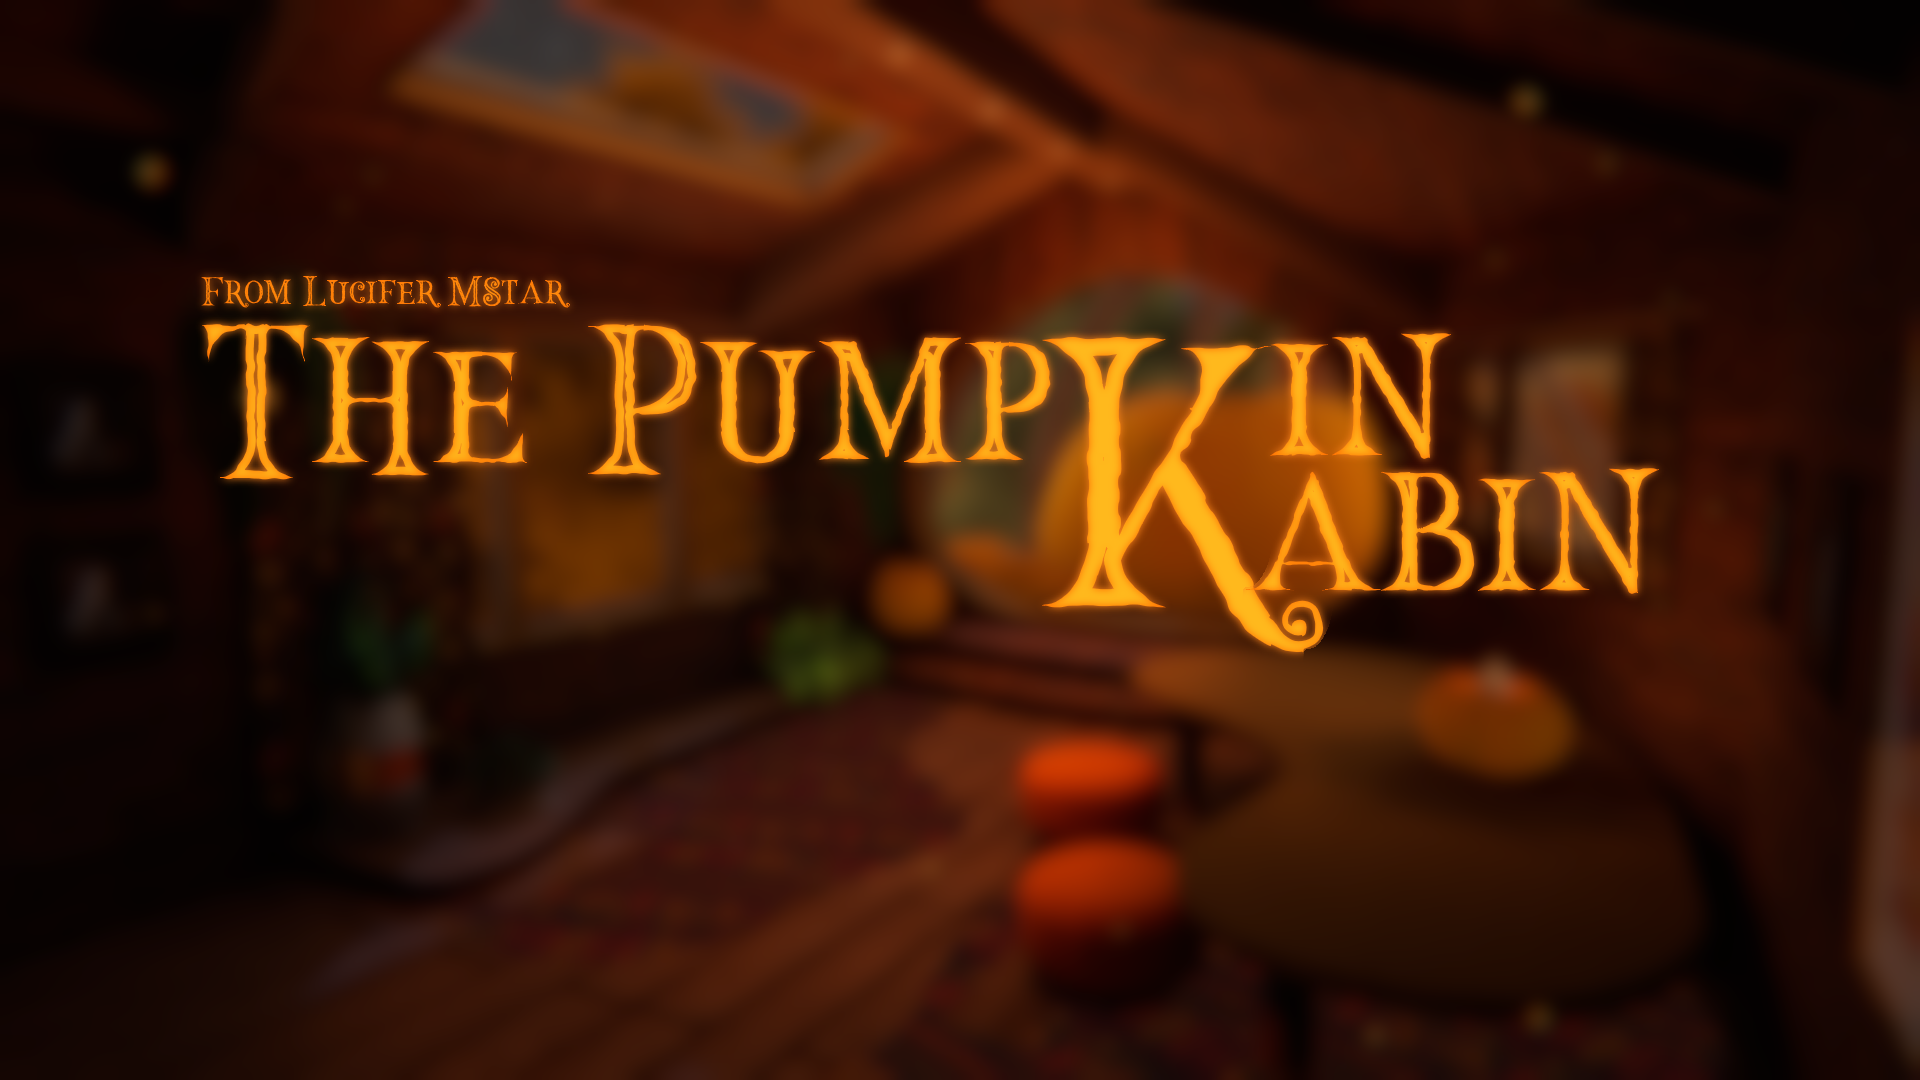 The Pumpkin Cabin